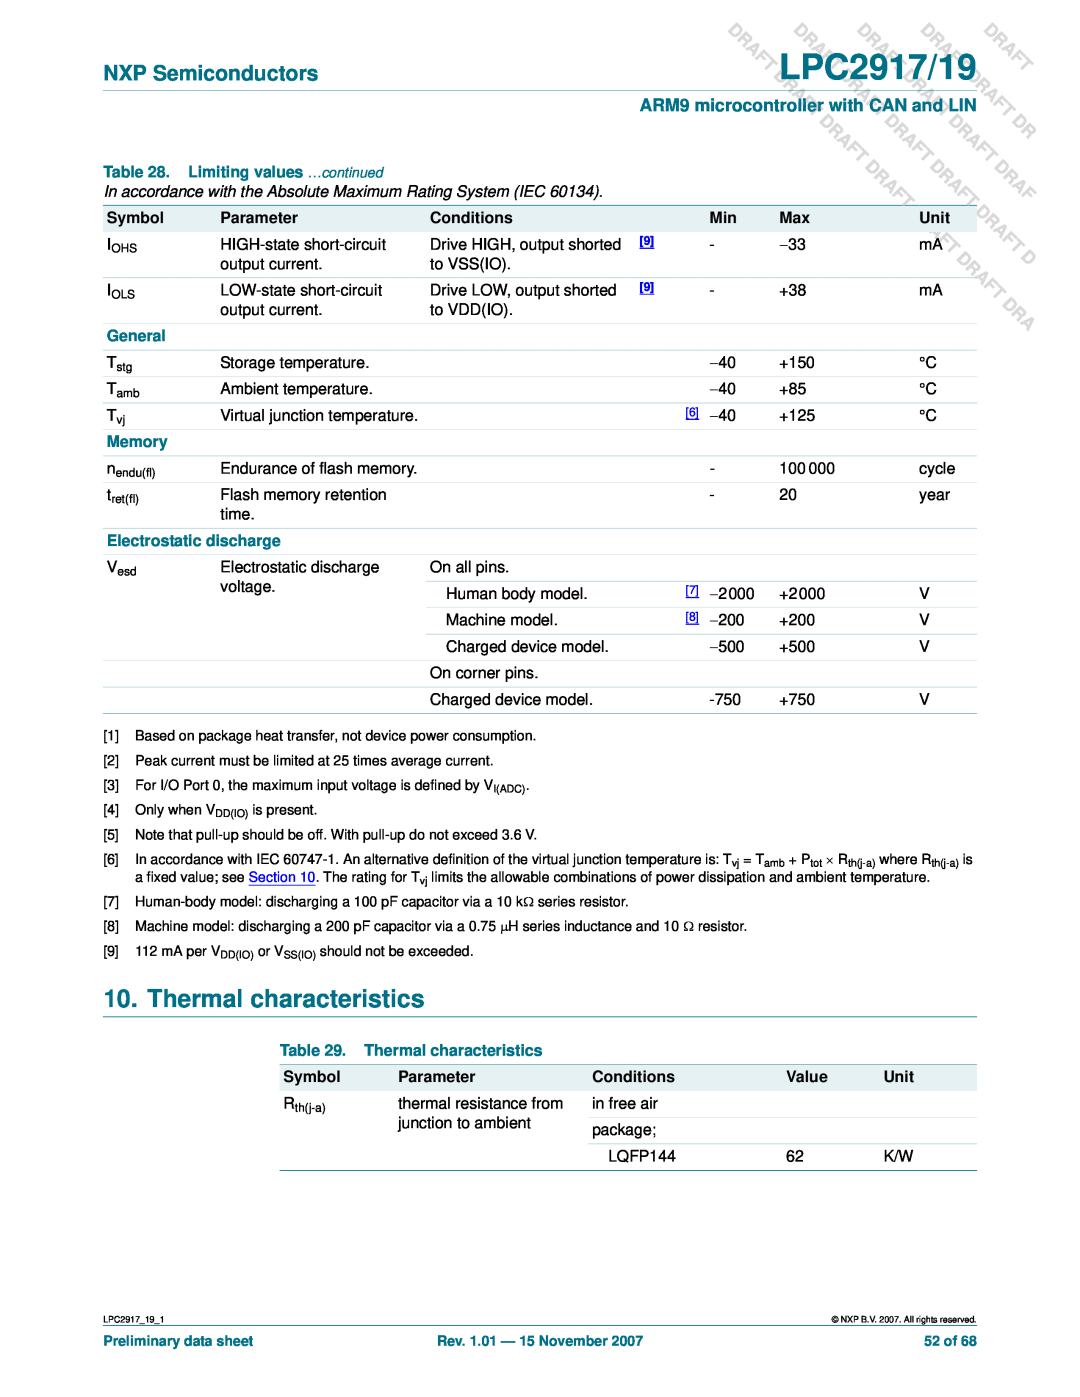 NXP Semiconductors LPC2919 Thermal characteristics, DRAFTmA, DLPC2917/19, Raft Aft, Dra Dr, T Draft, mA DRAFT, Symbol 